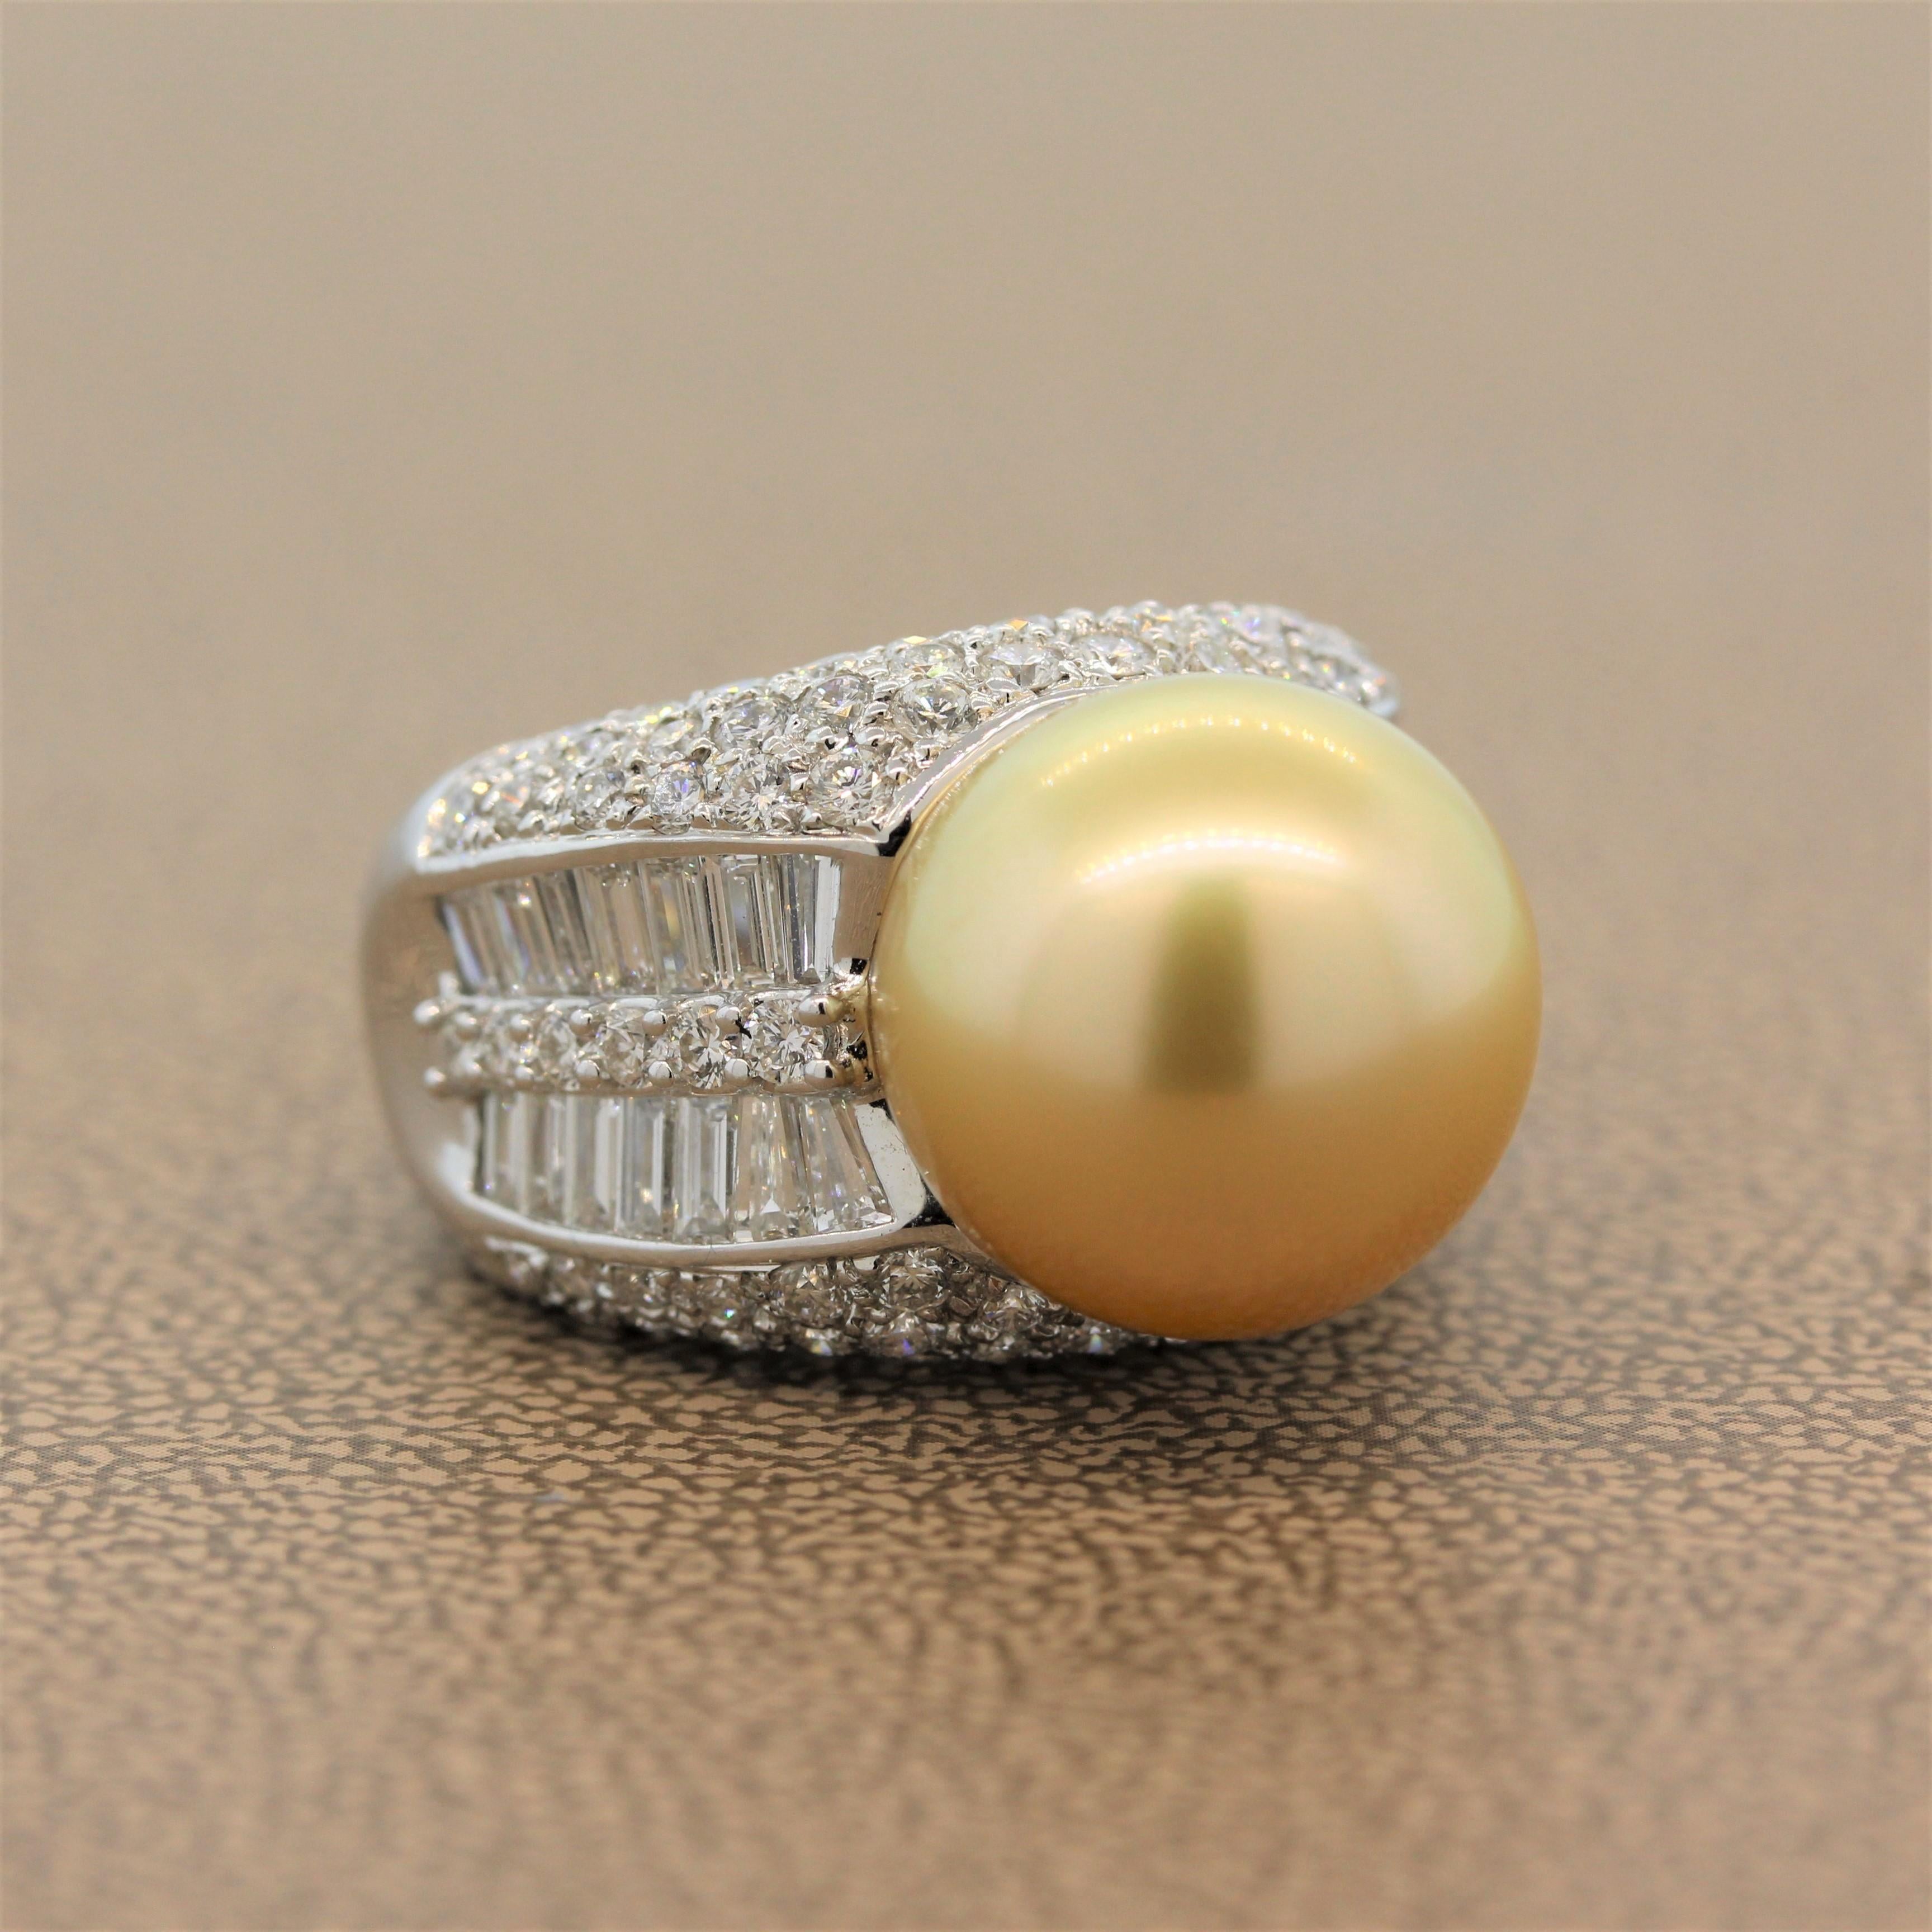 Ein wundervoller Ring mit einer 14,5 mm großen goldenen Südseeperle. Der Glanz dieser atemberaubenden Perle passt perfekt zu den 4,80 Karat Diamanten im Rund- und Baguetteschliff in diesem Ring aus 18 Karat Weißgold.

Ring Größe 5.5 (Sizable)
